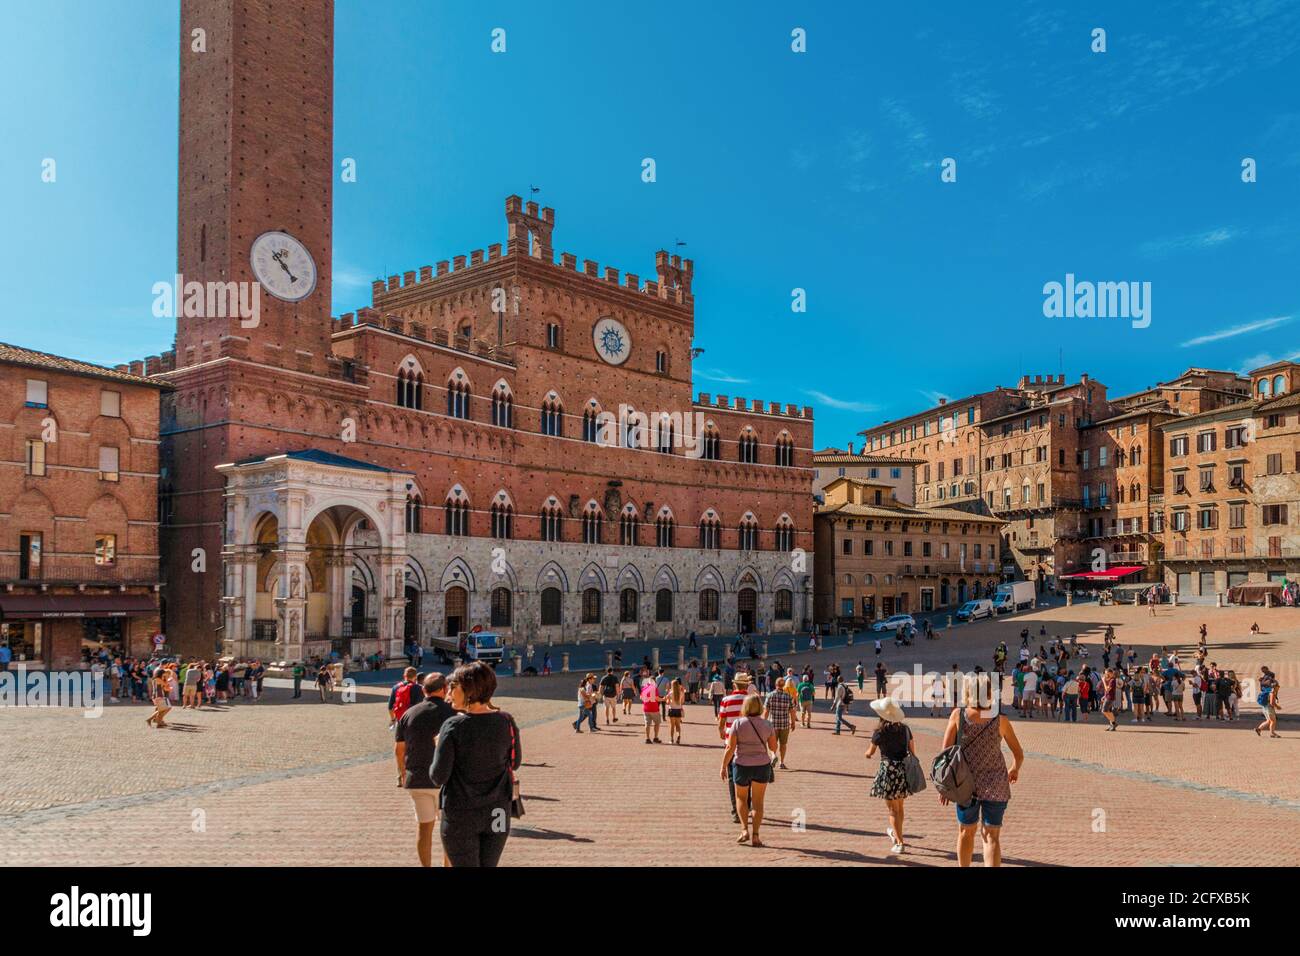 Belle vue panoramique de la célèbre mairie Palazzo Pubblico, un lieu touristique populaire sur la place principale historique Piazza del Campo par une journée ensoleillée... Banque D'Images